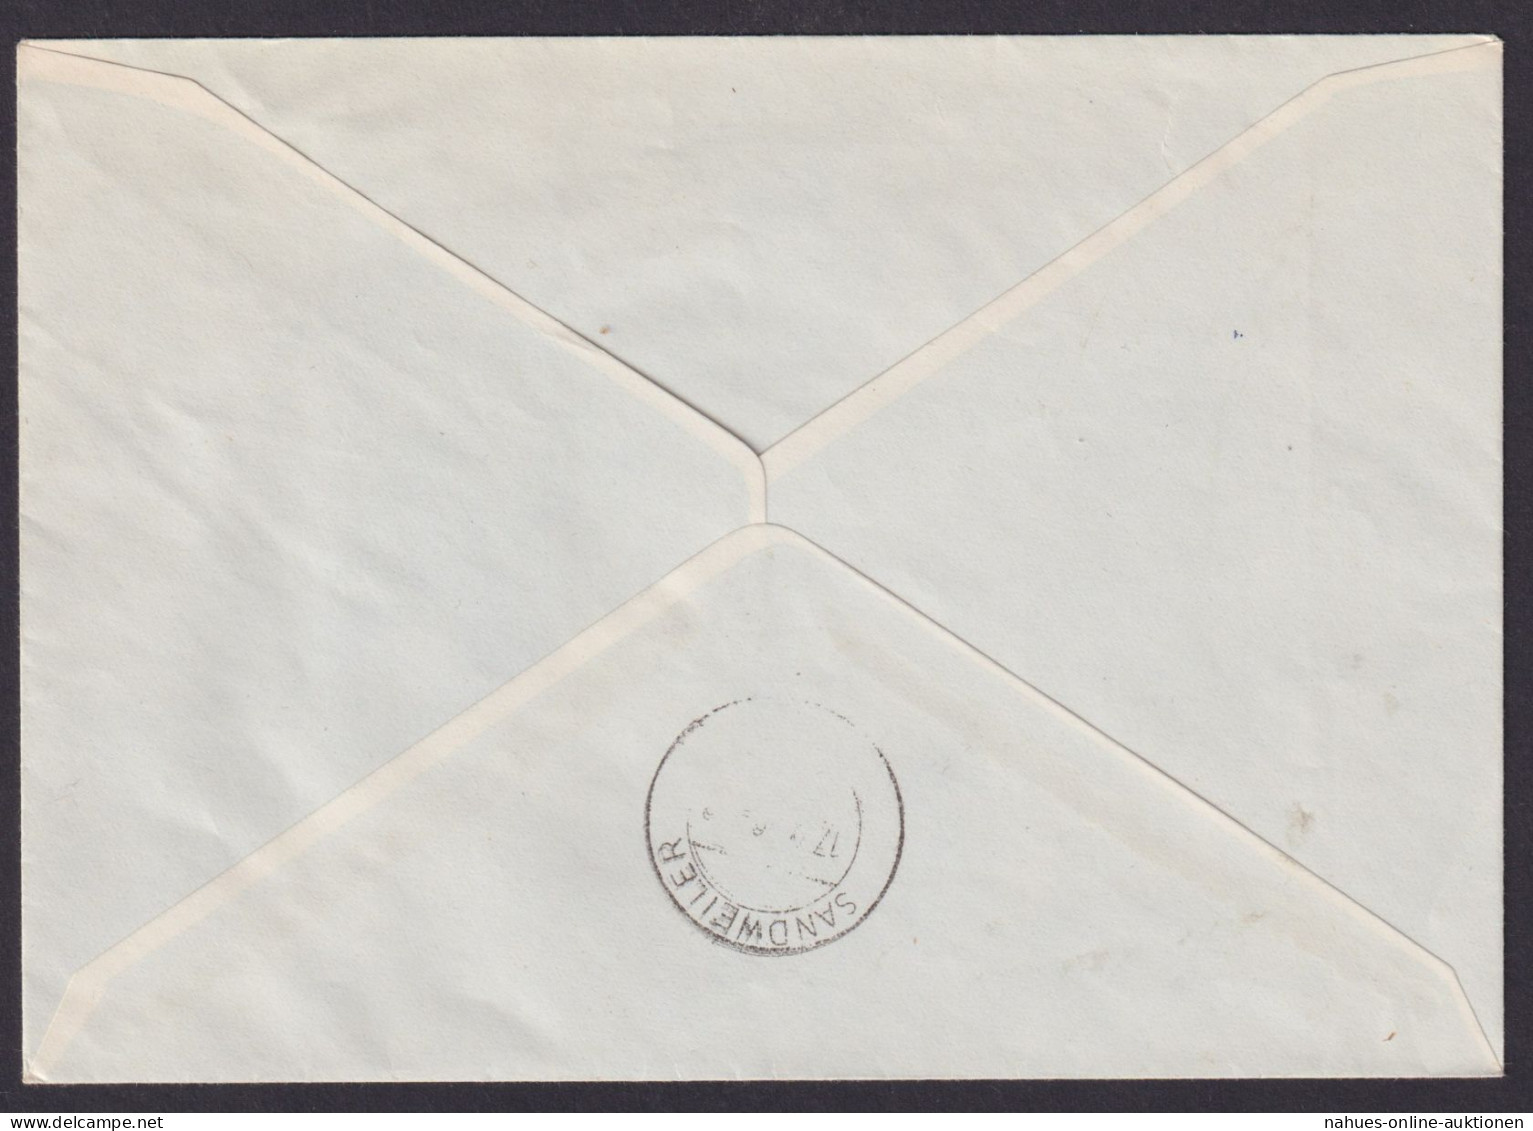 Luxemburg R Brief 555-557 Europa Ausgabe 1956 Als Echt Gelaufener FDC Kat 120,00 - Lettres & Documents